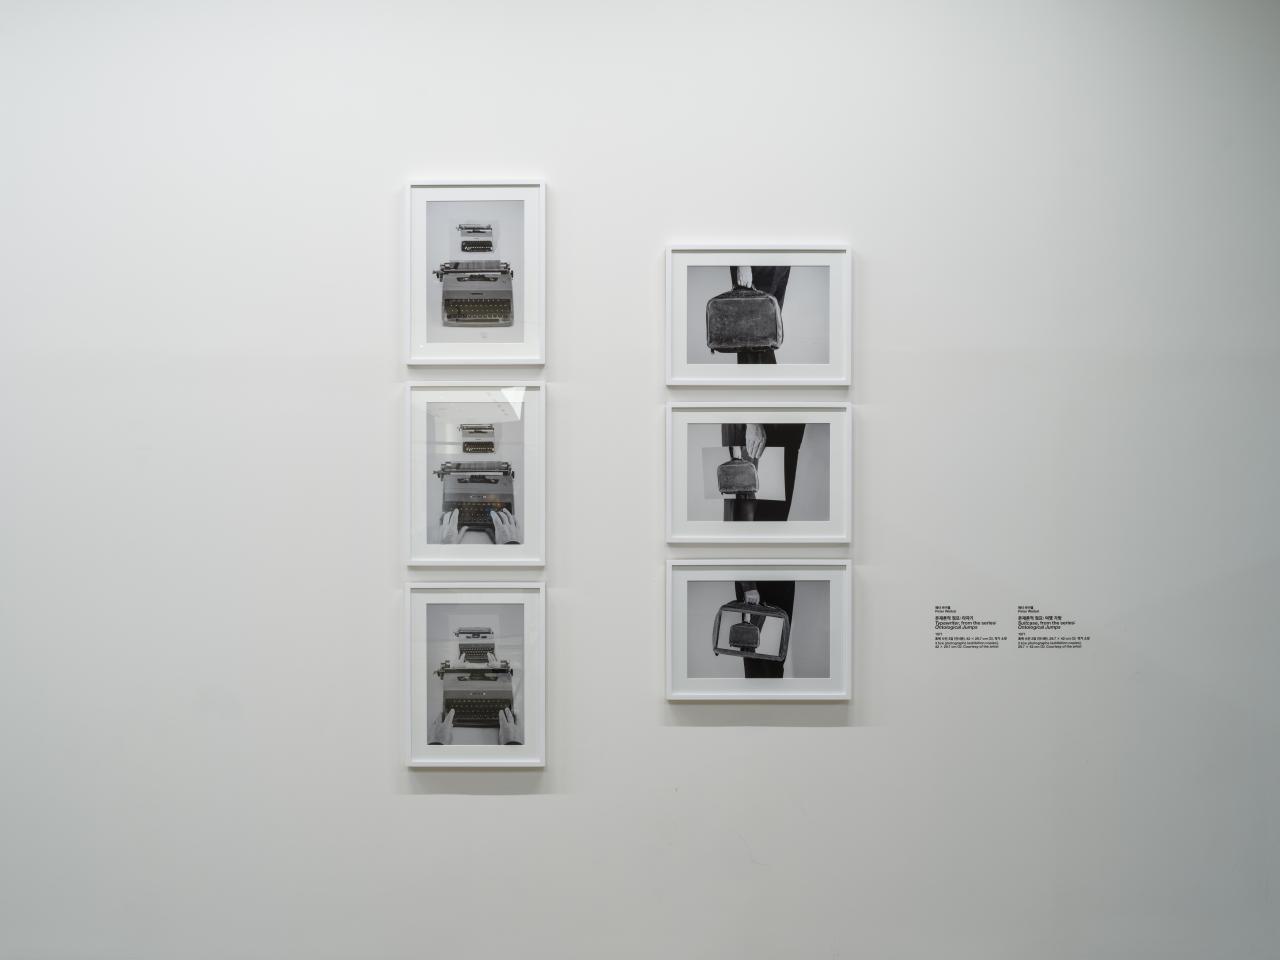 Zu sehen sind sechs Bild-in-Bild, schwarz-weiß Fotografien in Bilderrahmen an einer Wand. Drei von ihnen zeigen eine Schreibmaschine, die anderen drei zeigen eine Hand, die eine Aktentasche hält.